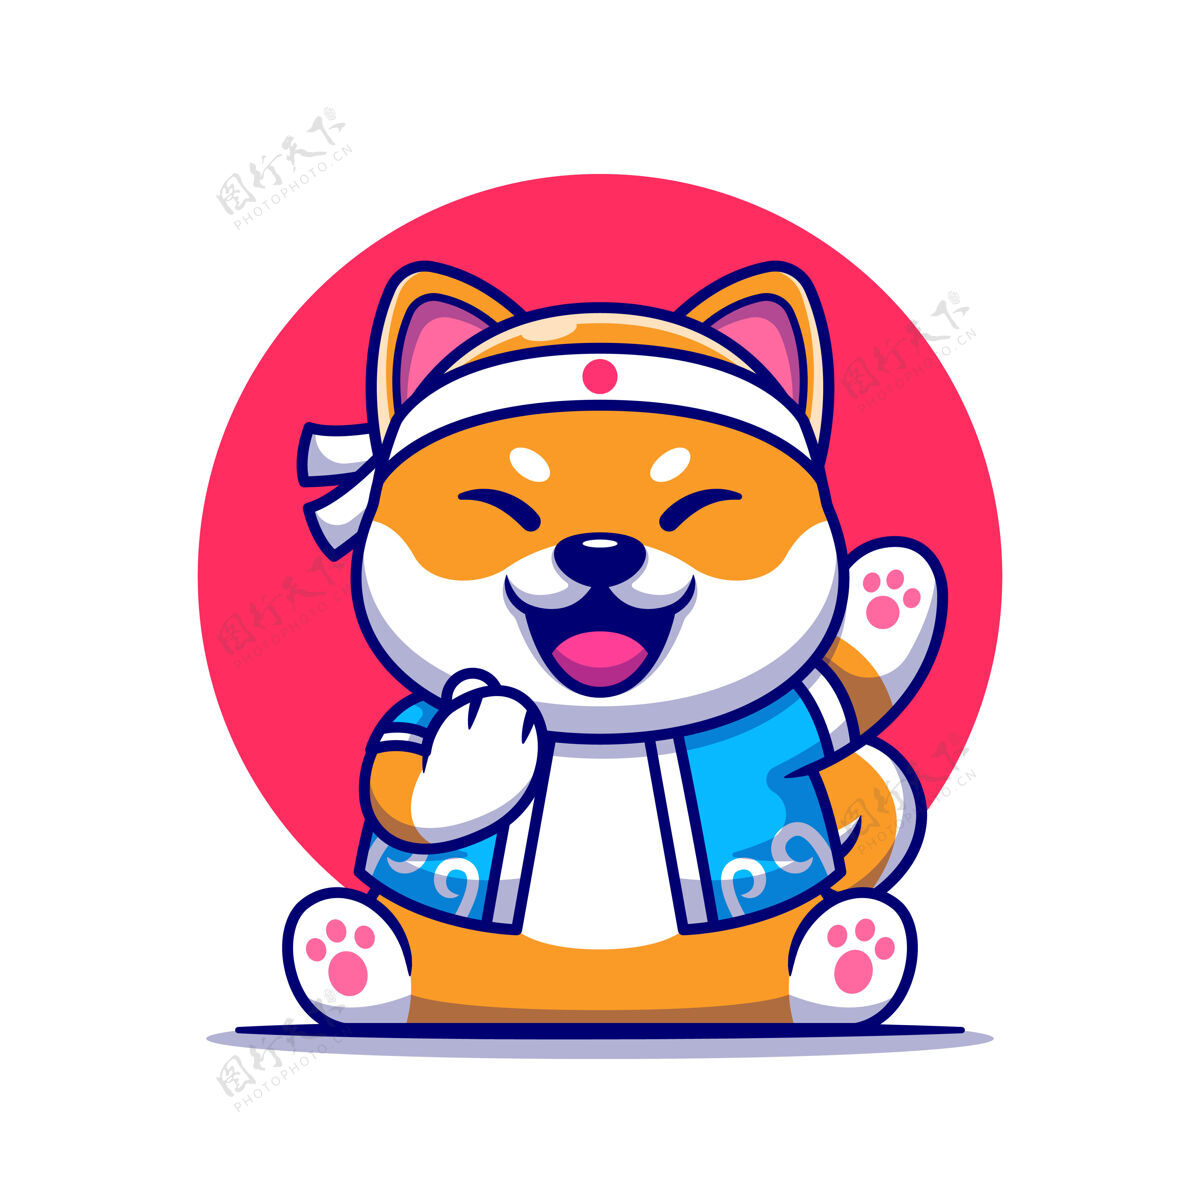 猎犬可爱的八犬日本服装卡通插画绒毛吉祥物国内